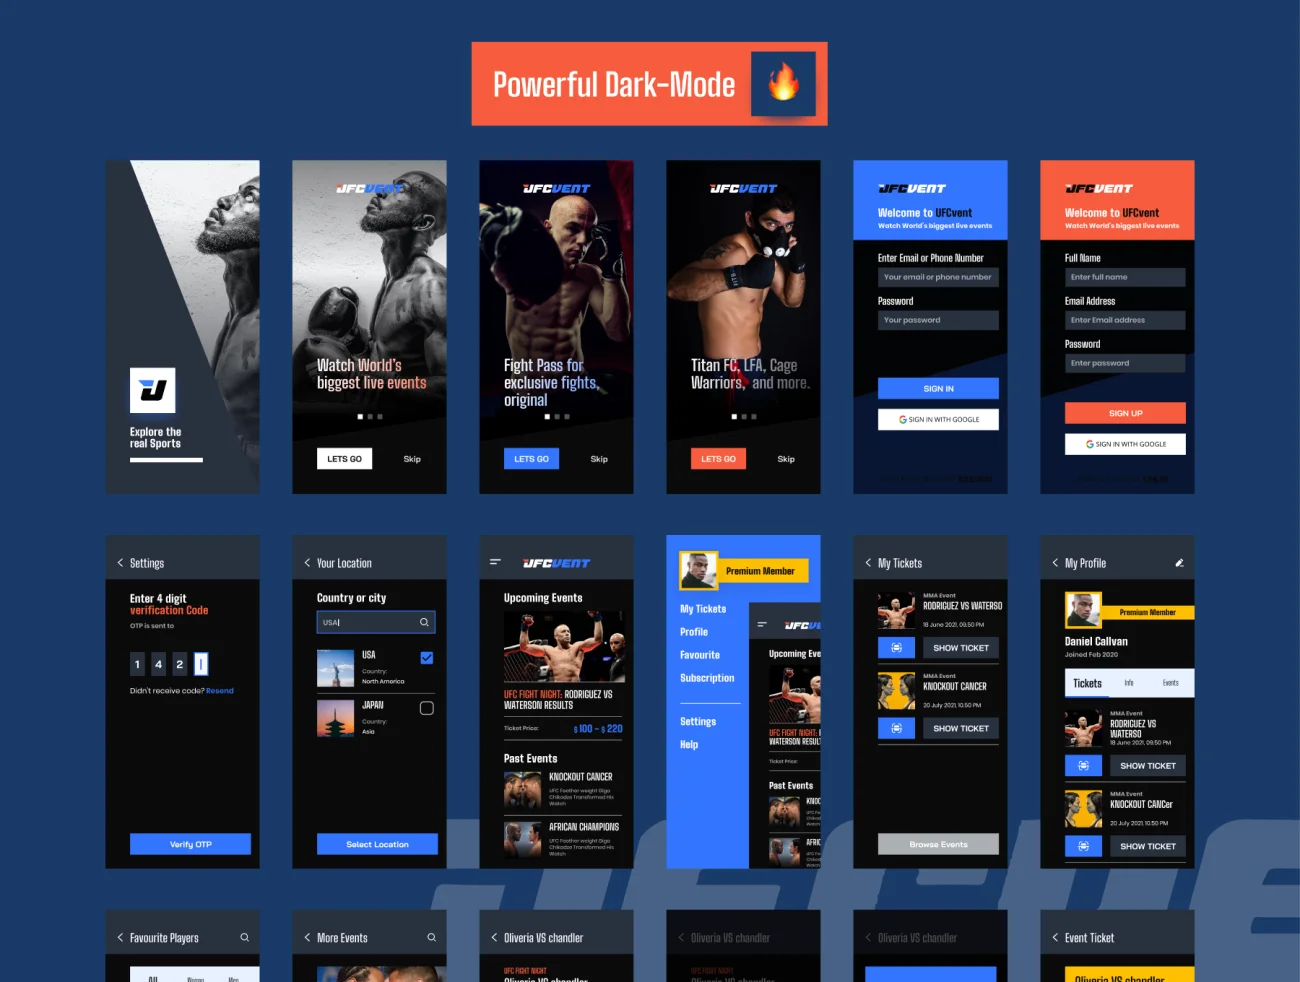 20屏完整版UFC MMA拳击摔跤综合格斗赛事比赛应用 UFC VENT – MMA Event Booking app插图3